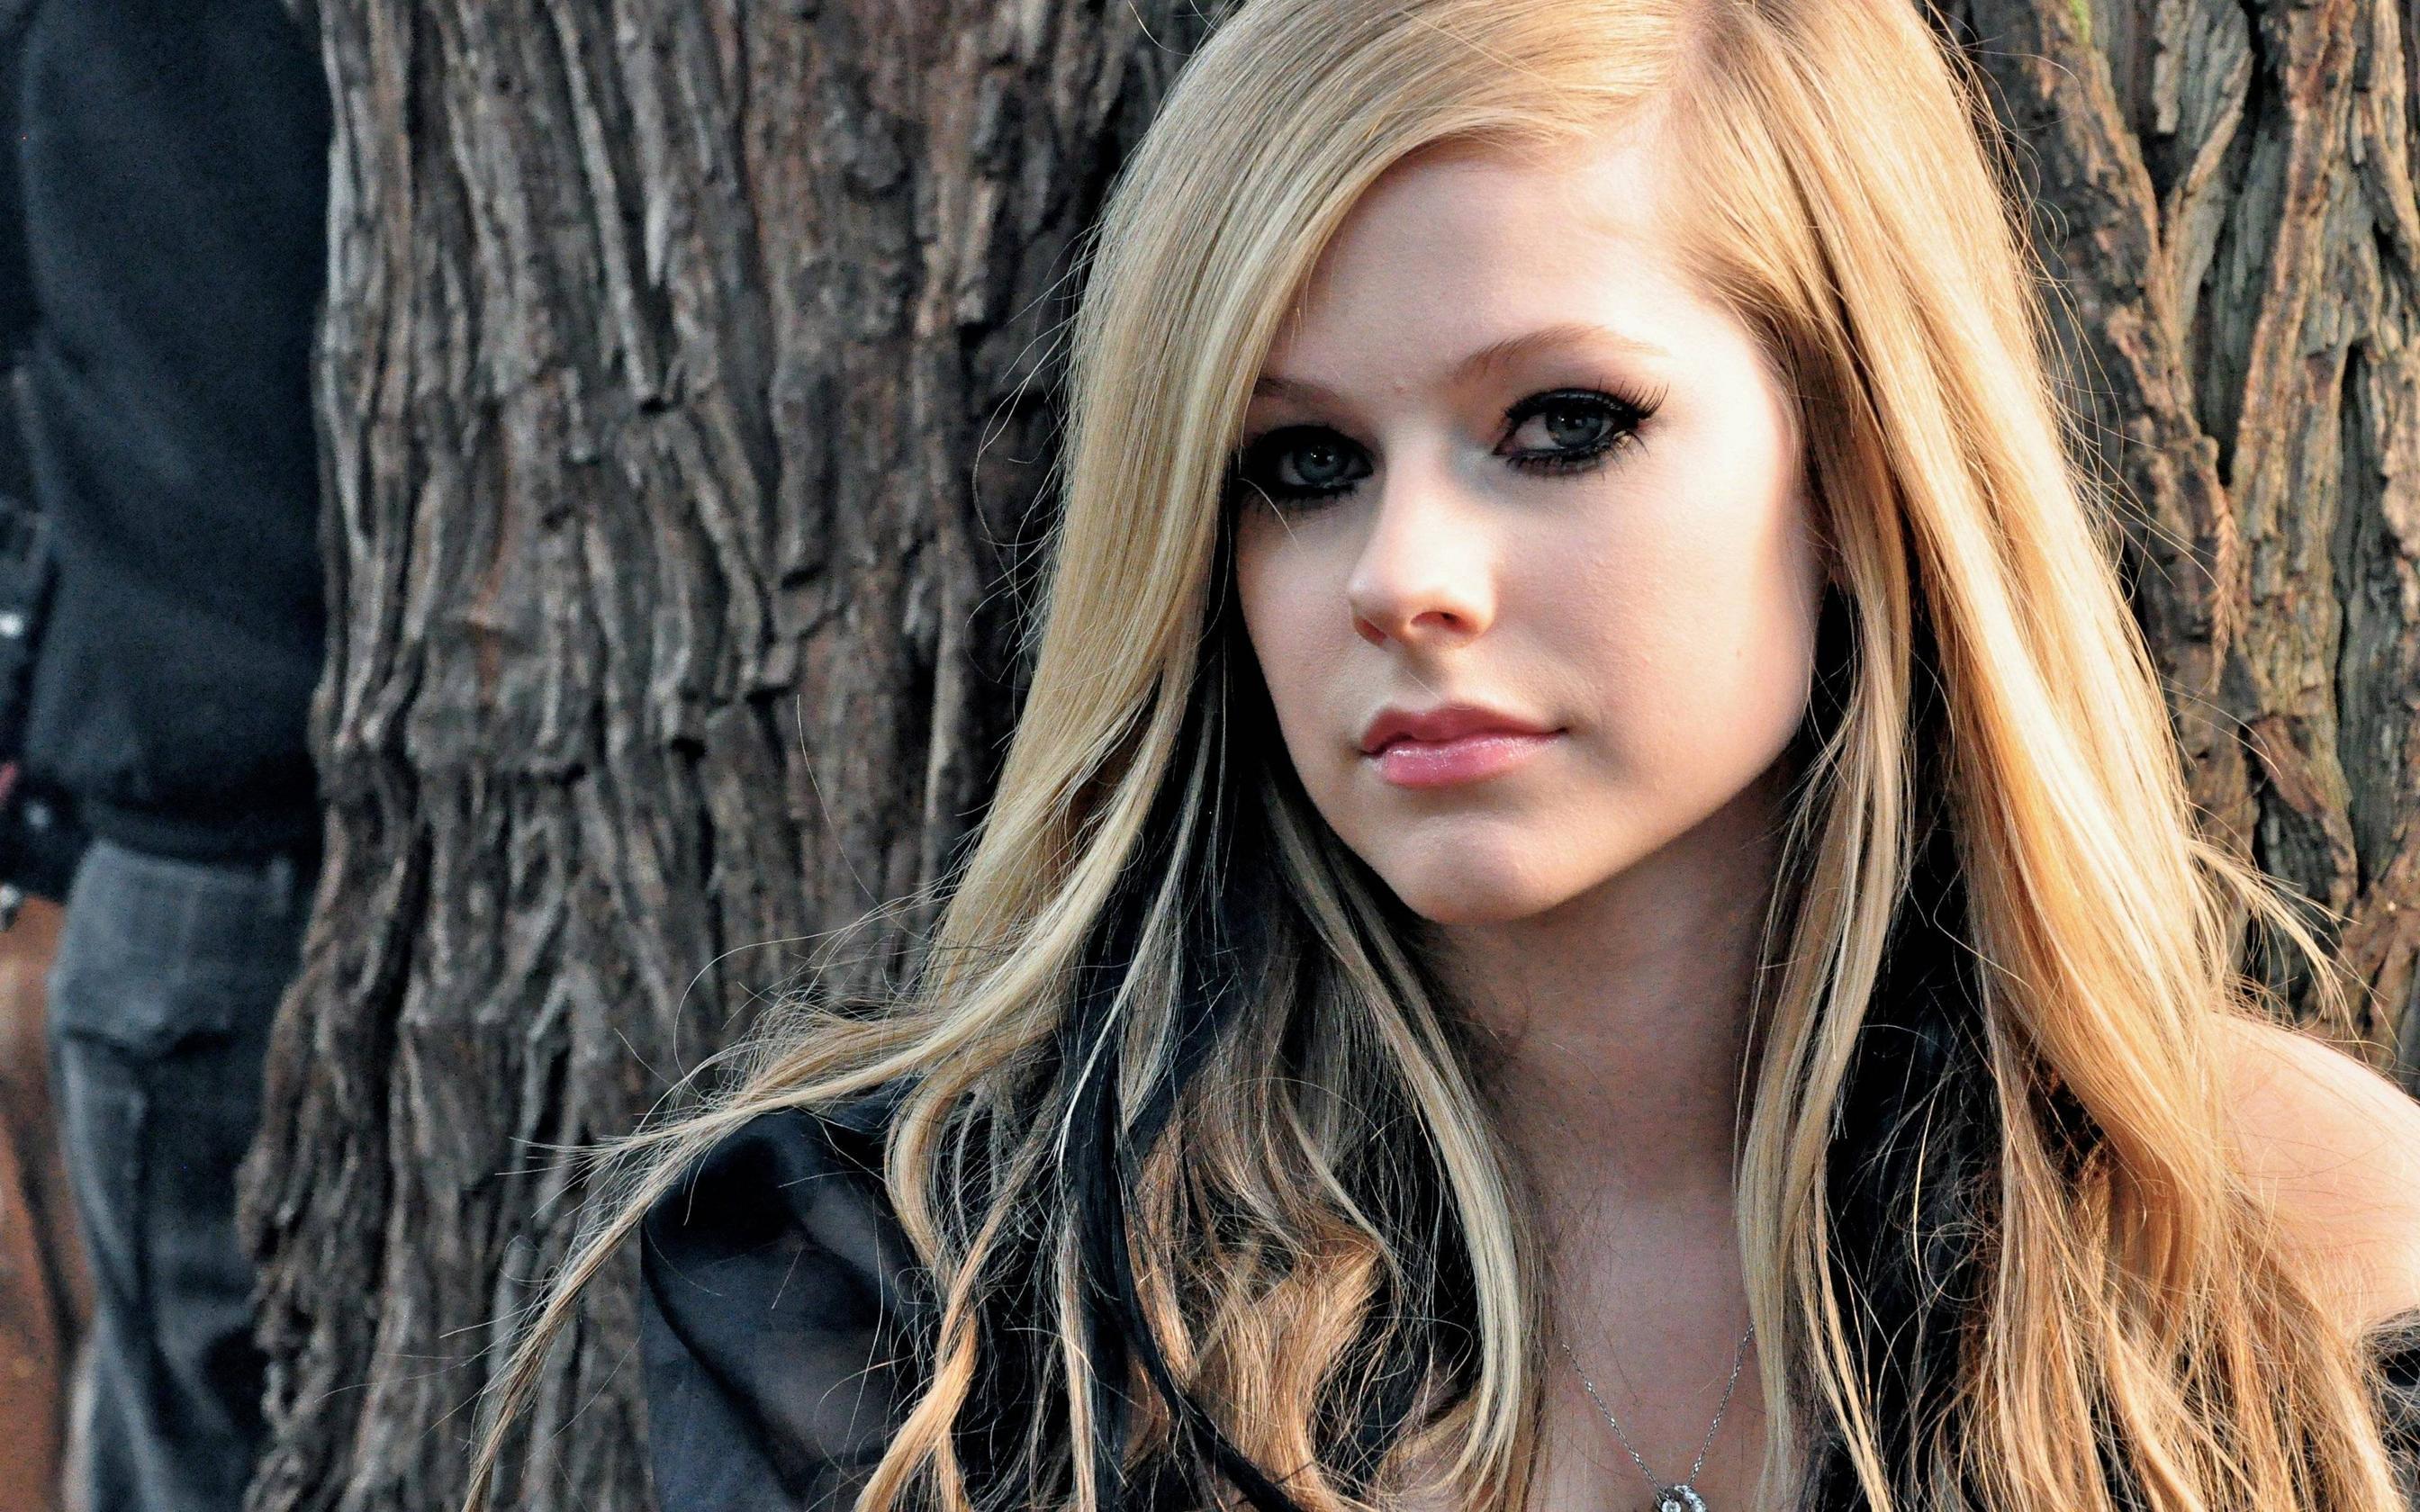 Avril Lavigne Wallpaper: Avril Lavigne Wallpaper. .Ssofc